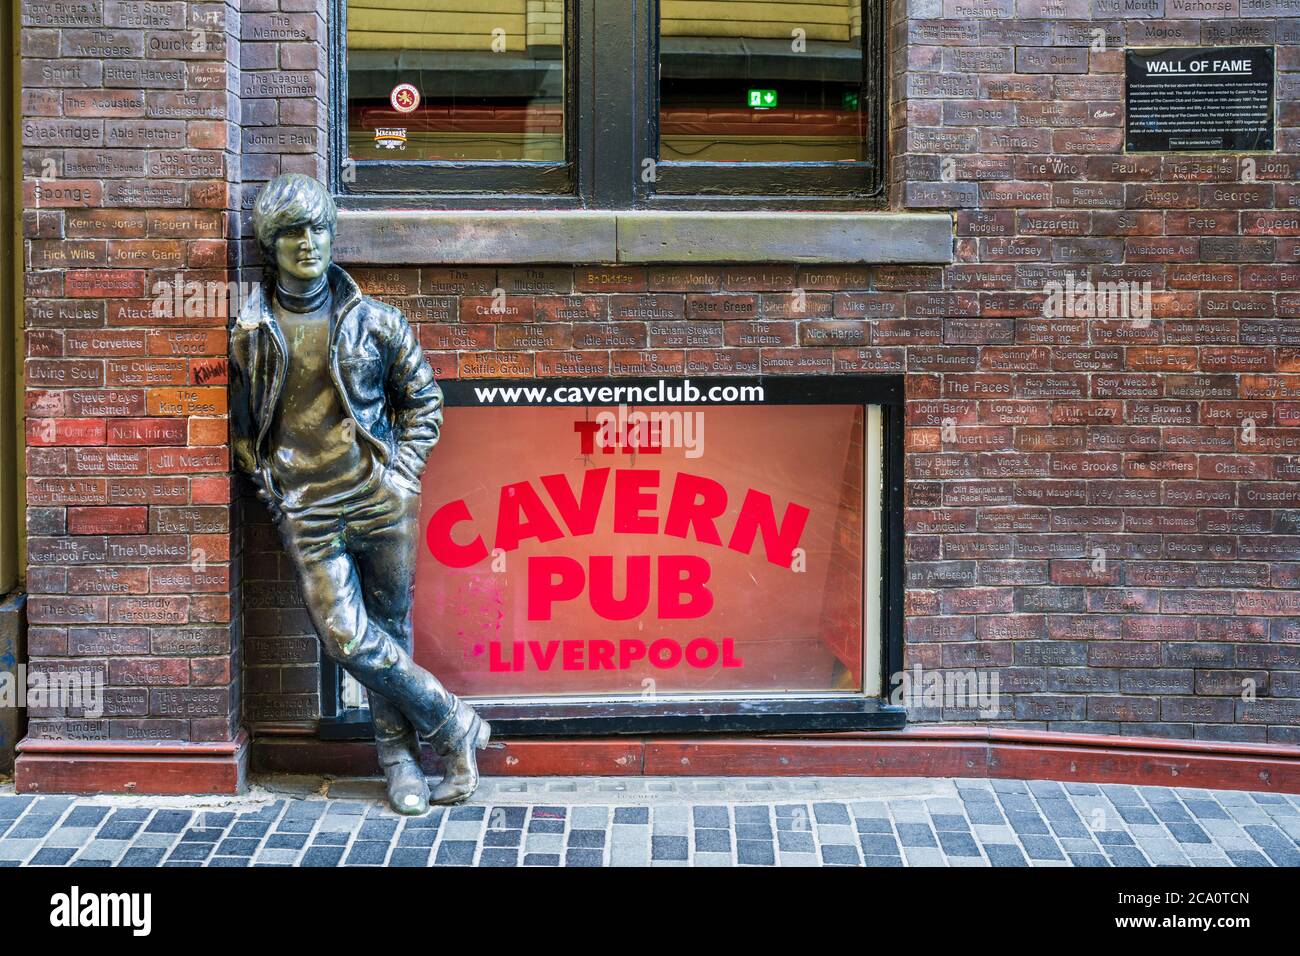 John Lennon Statue Mathew Street Liverpool in der Nähe des Cavern Club. Wall of Fame zeigt die Namen von Künstlern, die im Cavern Club spielten. Cavern Pub. Stockfoto